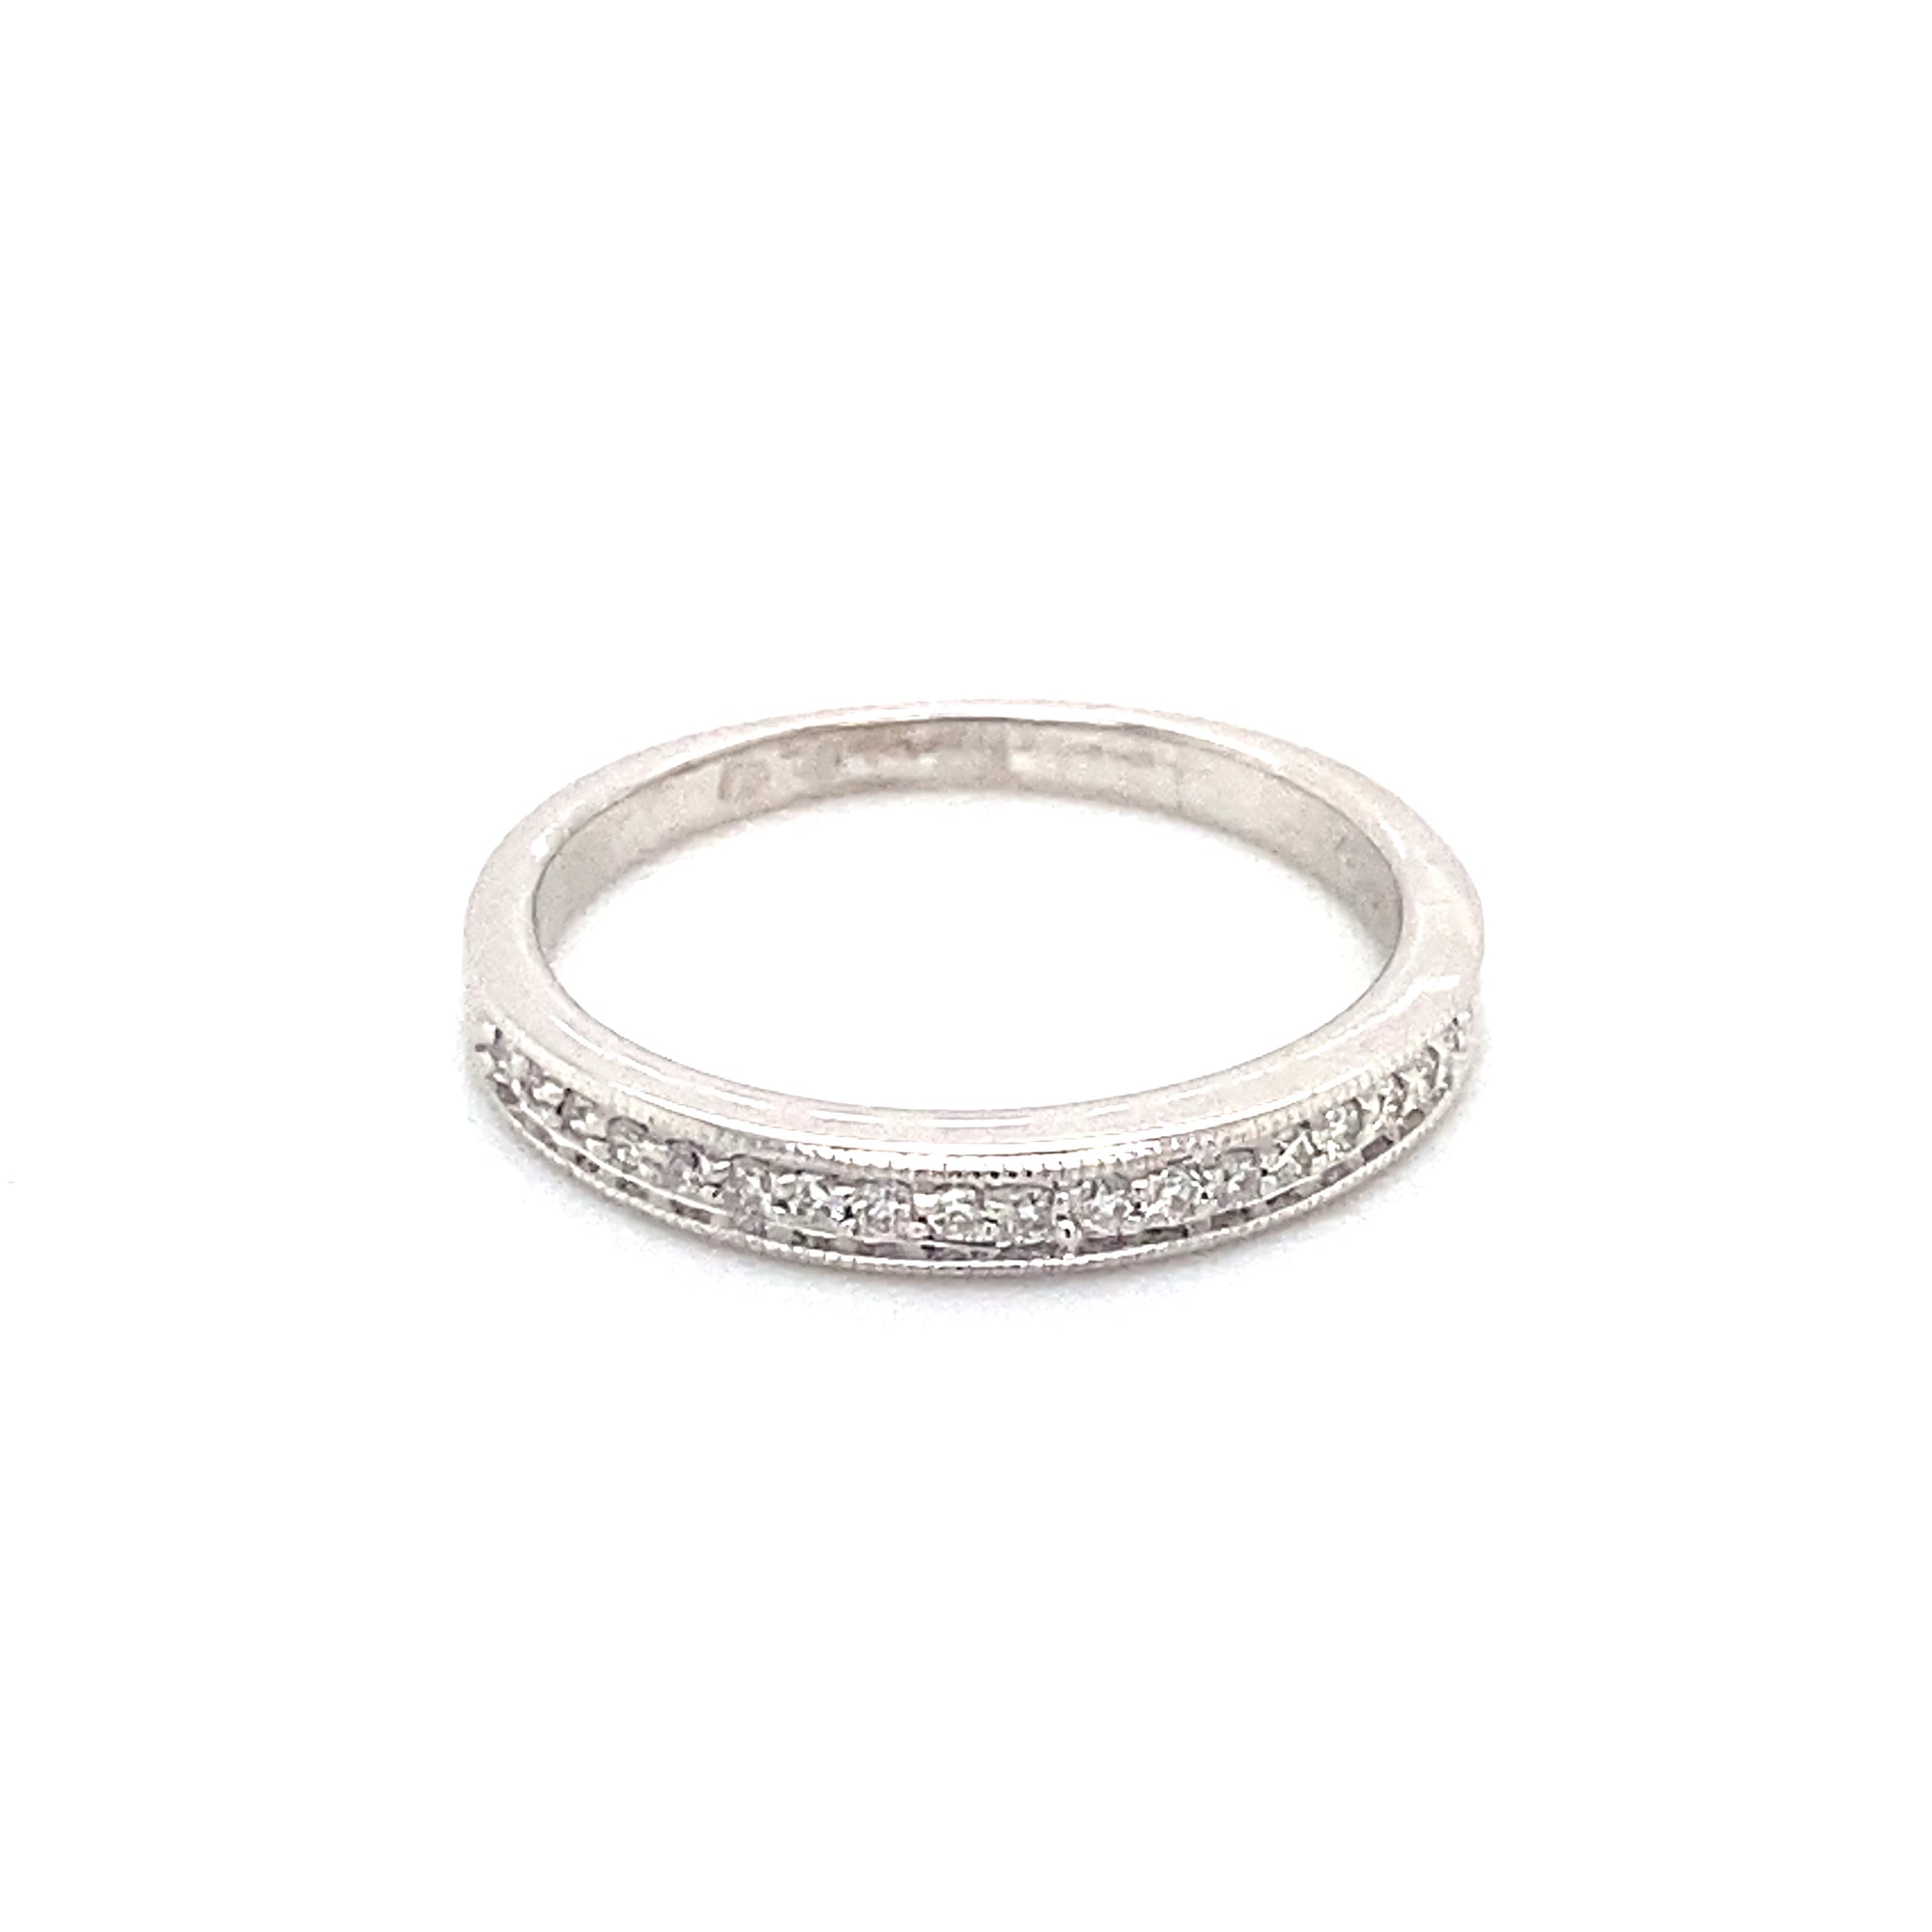 14K White Gold Thin Diamond Wedding Ring with Milgrain Edge